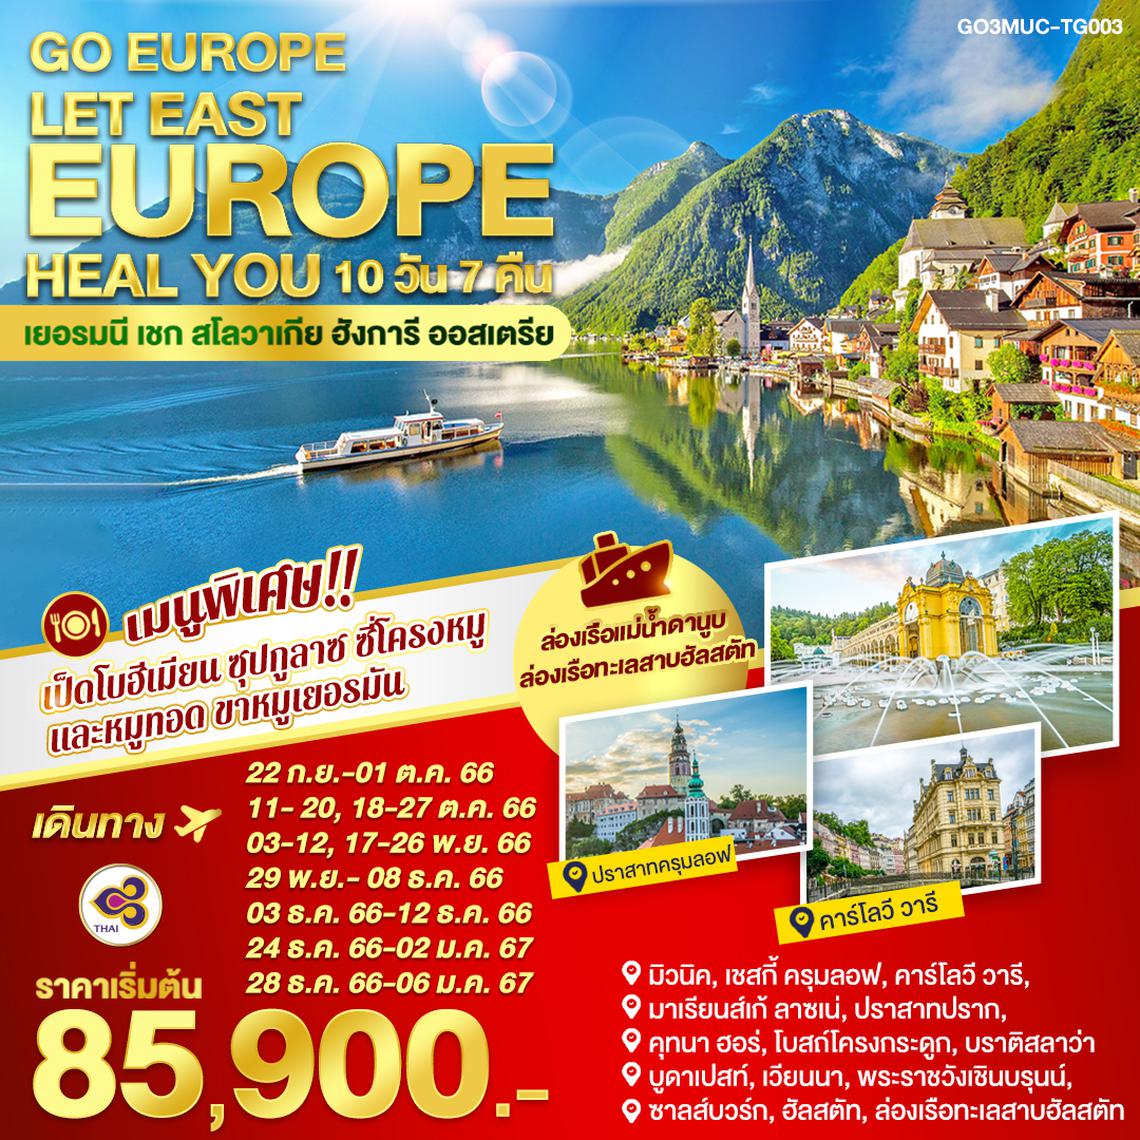 LET EAST EUROPE HEAL YOU เยอรมนี - เชก - สโลวาเกีย – ฮังการี - ออสเตรีย  		10 วัน 7 คืน โดยสายการบินไทย (TG)